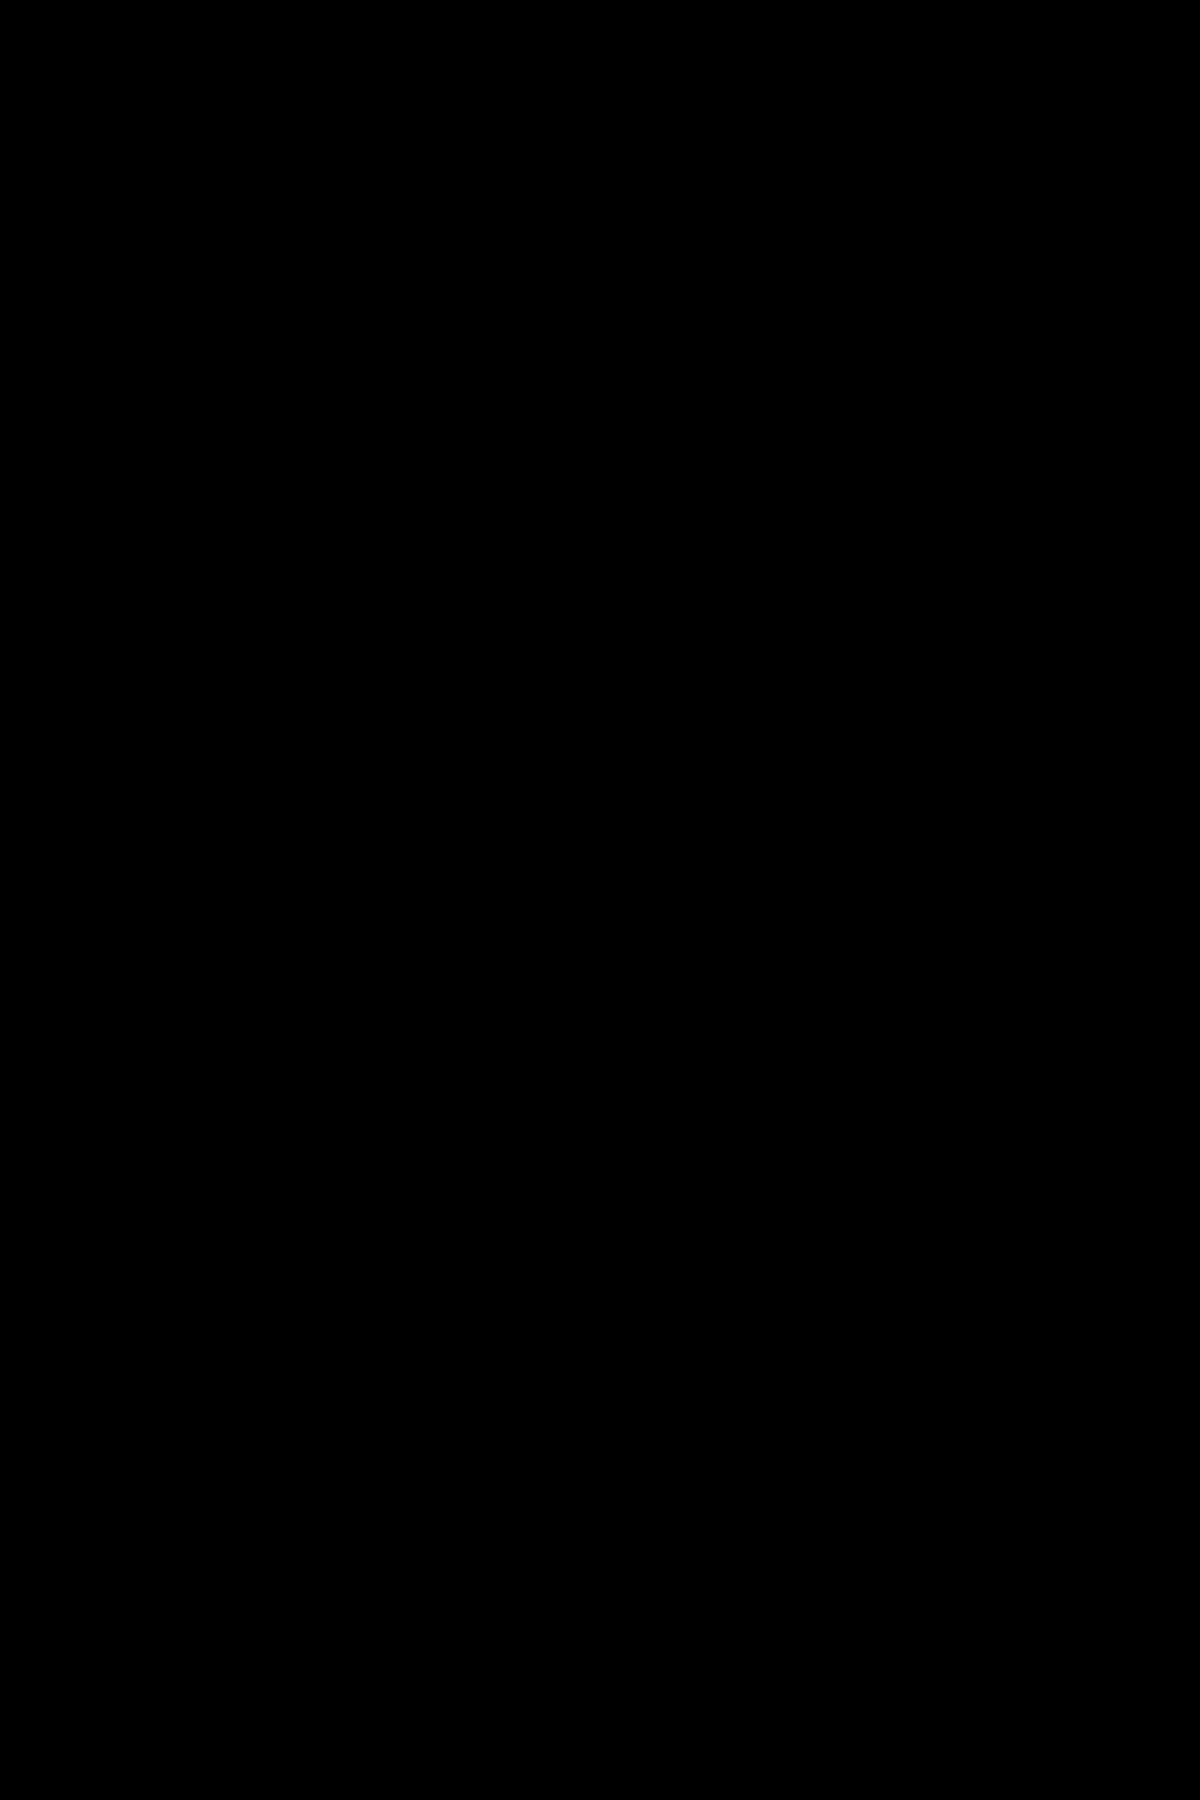 Yoğun Pigmentli Ince Keçe Fırçalı Yarı Mat Dipliner (SİYAH) - Dipliner-000black-8690604330003